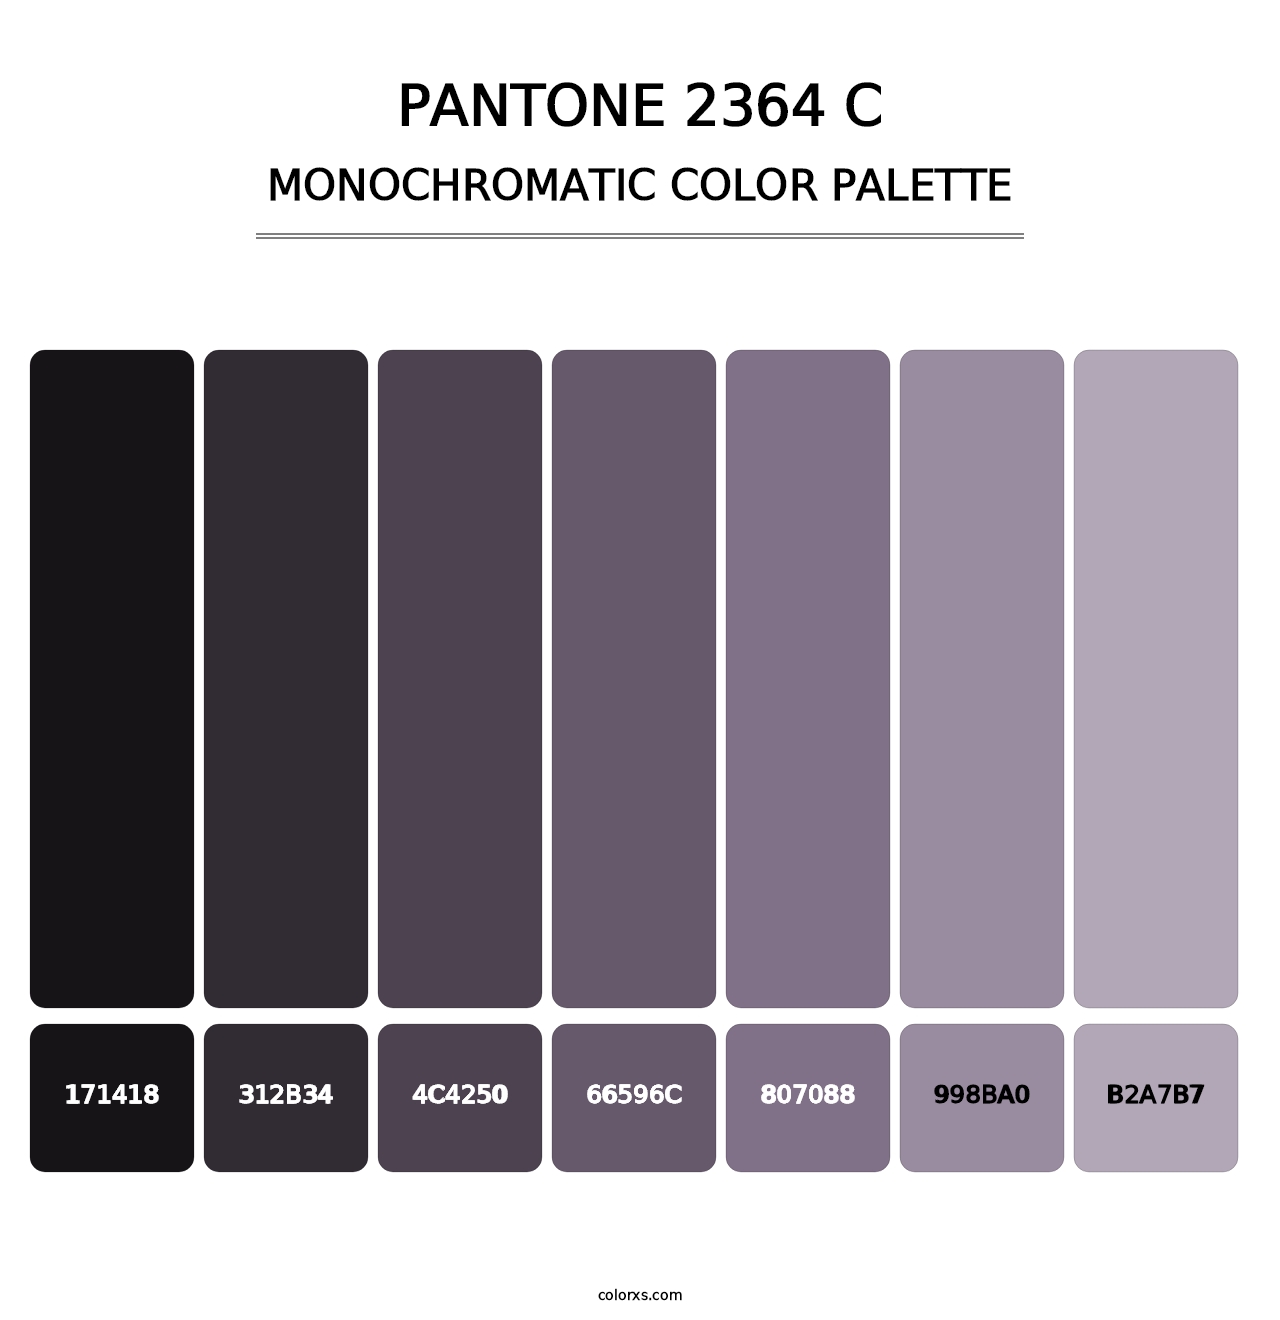 PANTONE 2364 C - Monochromatic Color Palette